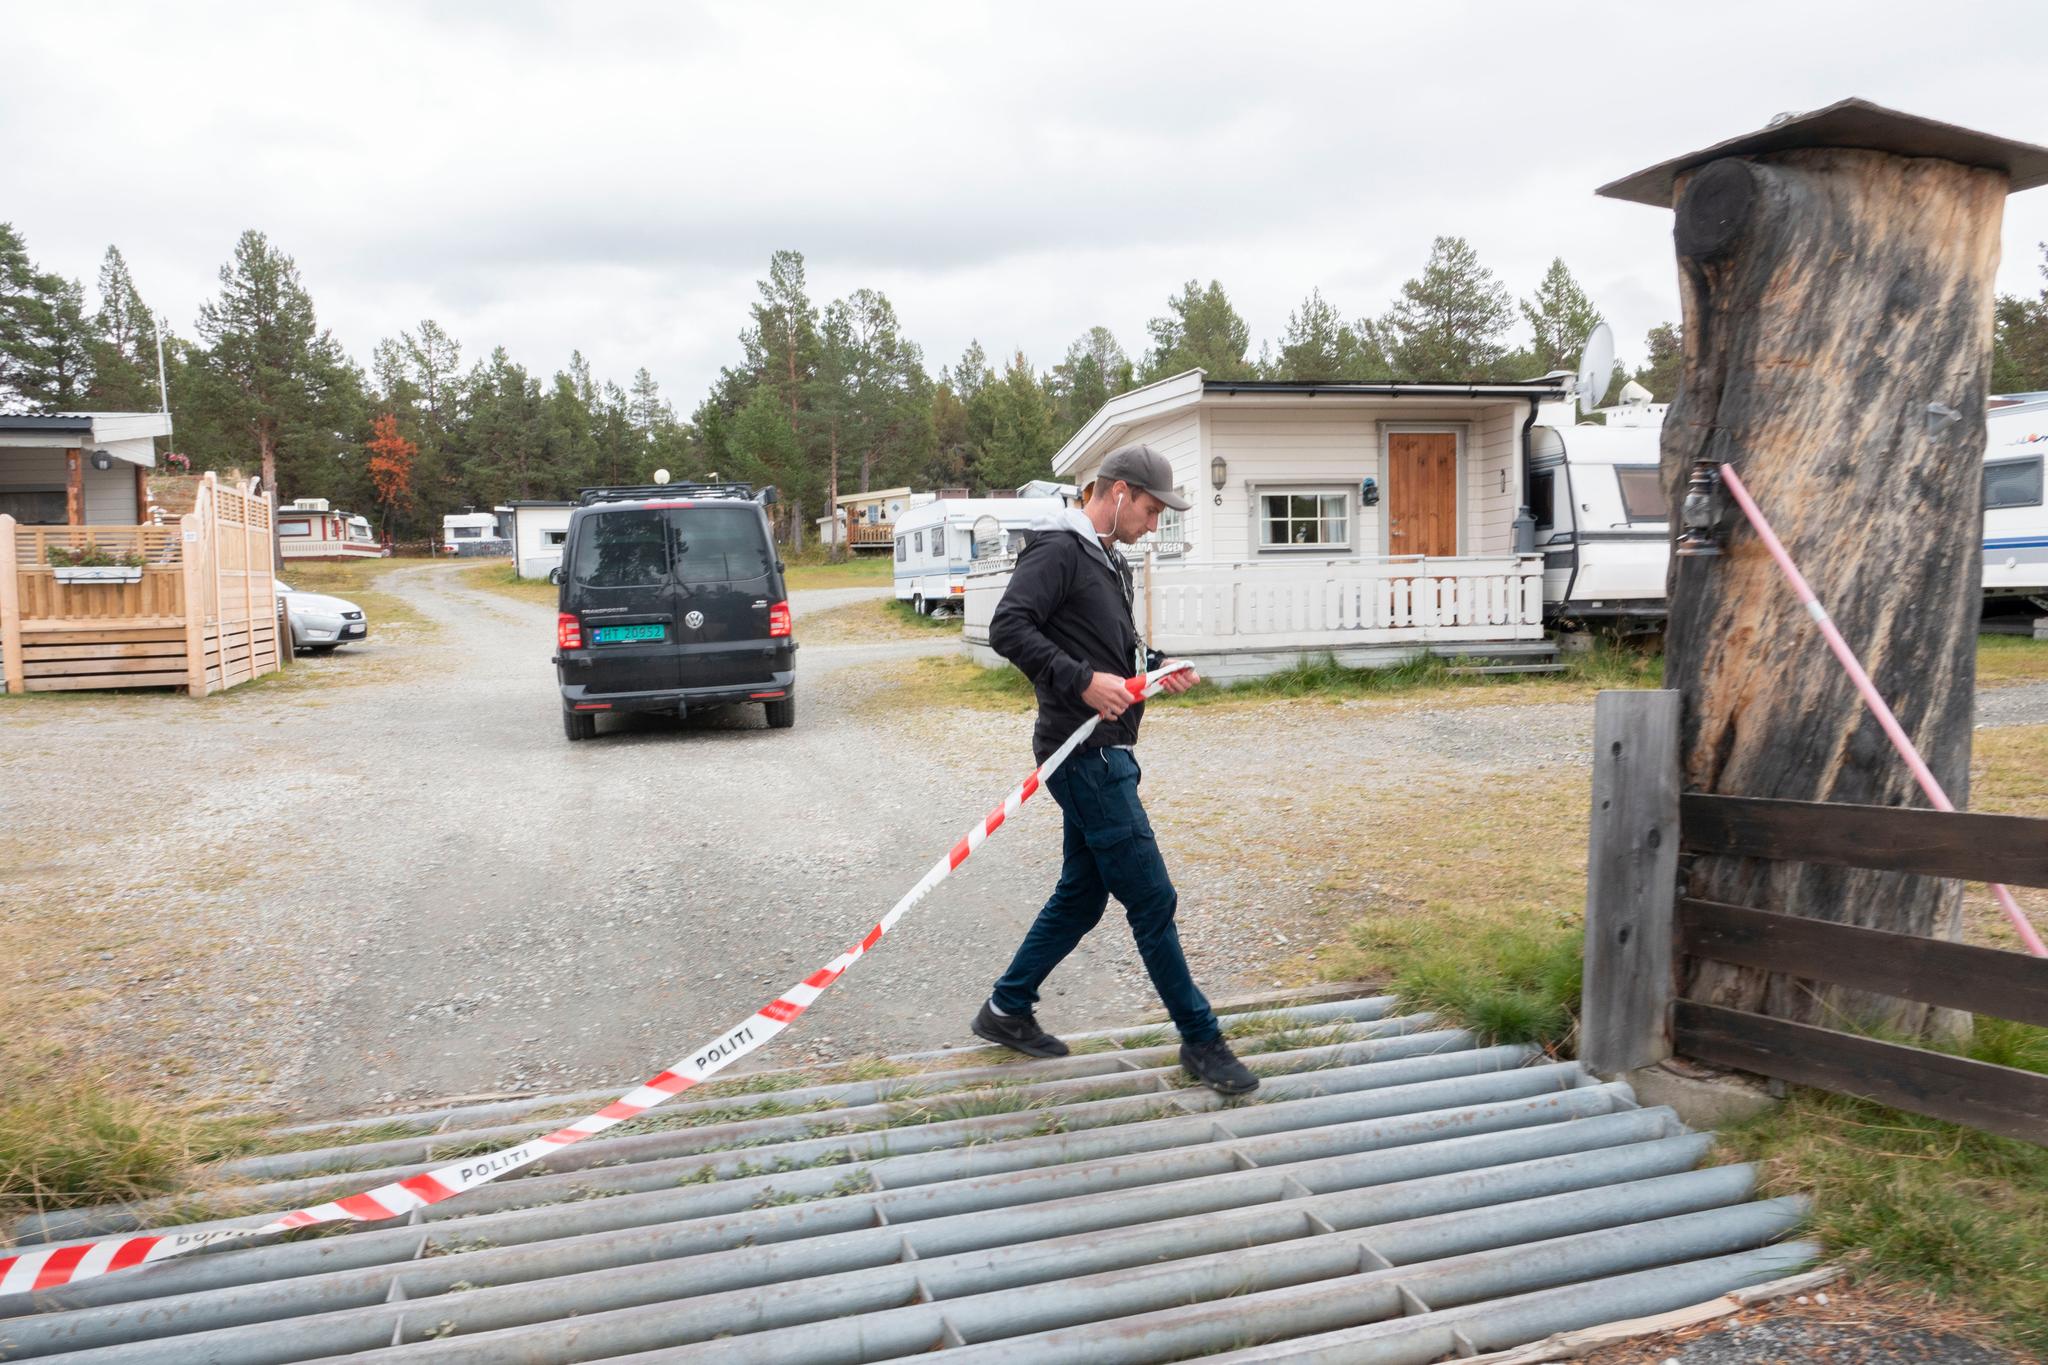  Politiet har sperret av hele campingplassen mens undersøkelsene pågår. I bakgrunnen ses bilen med etterforskere fra Lillehammer. 